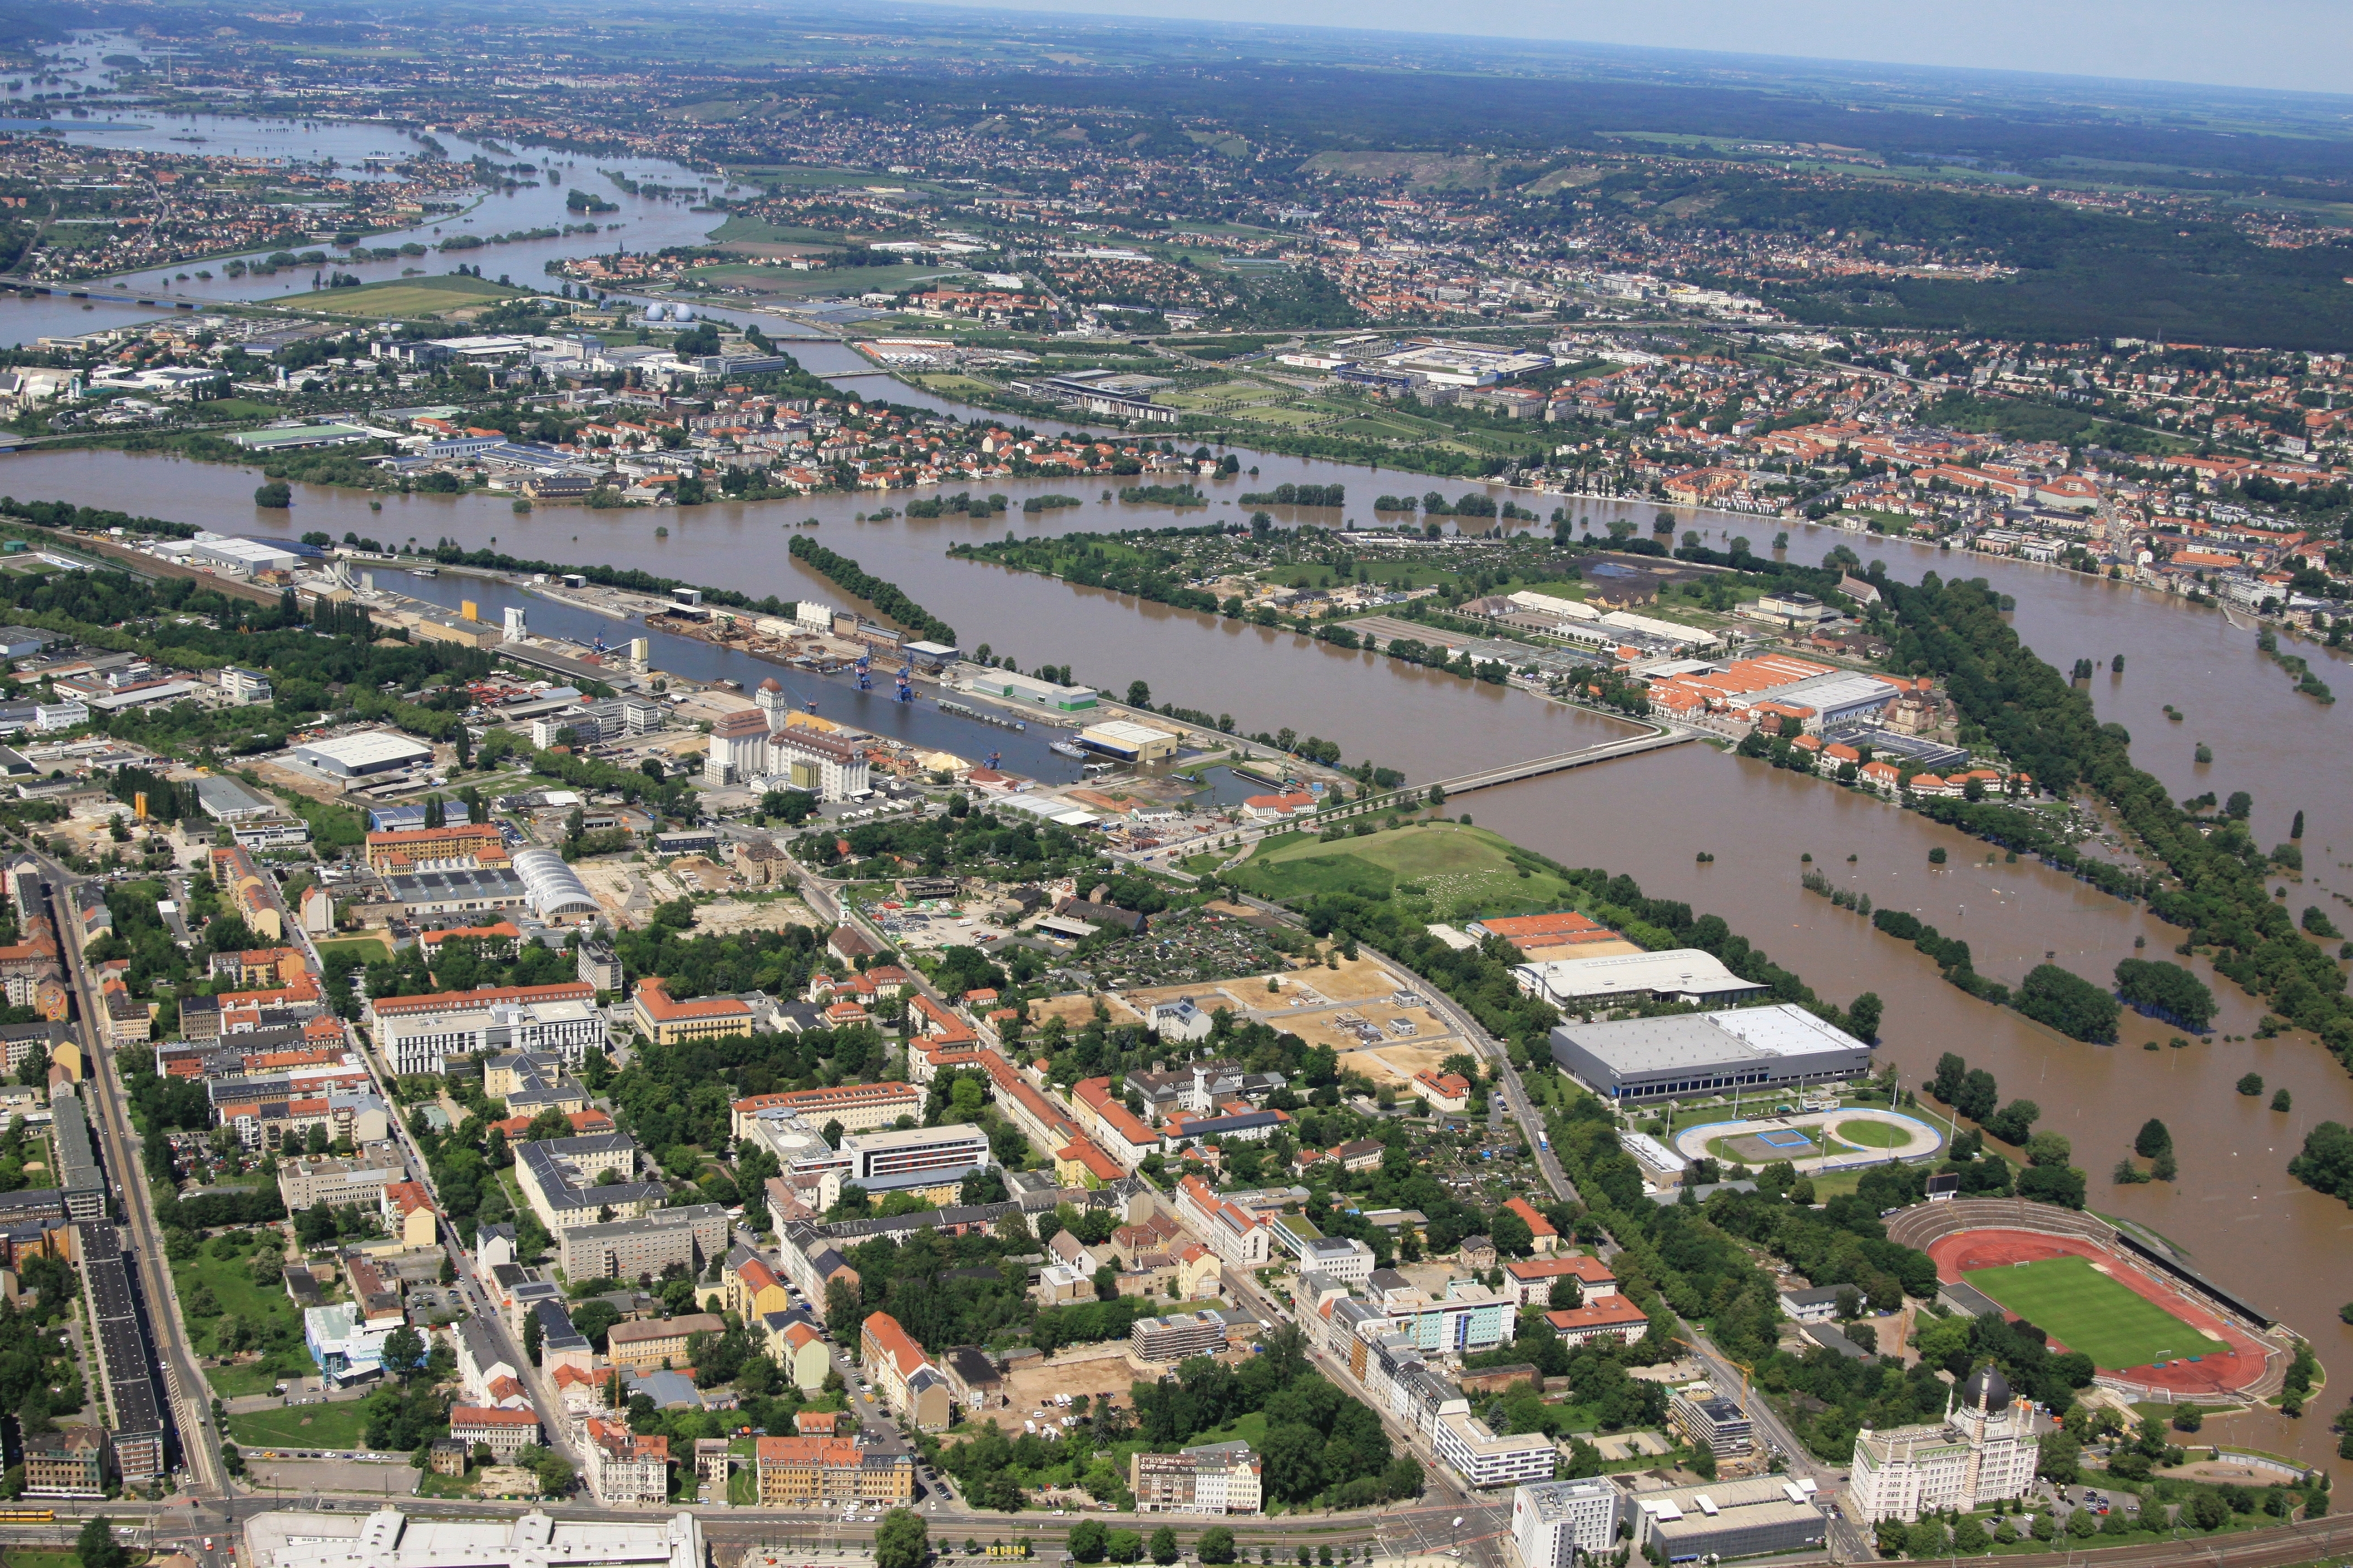 Luftbild vom Hochwasser 2013